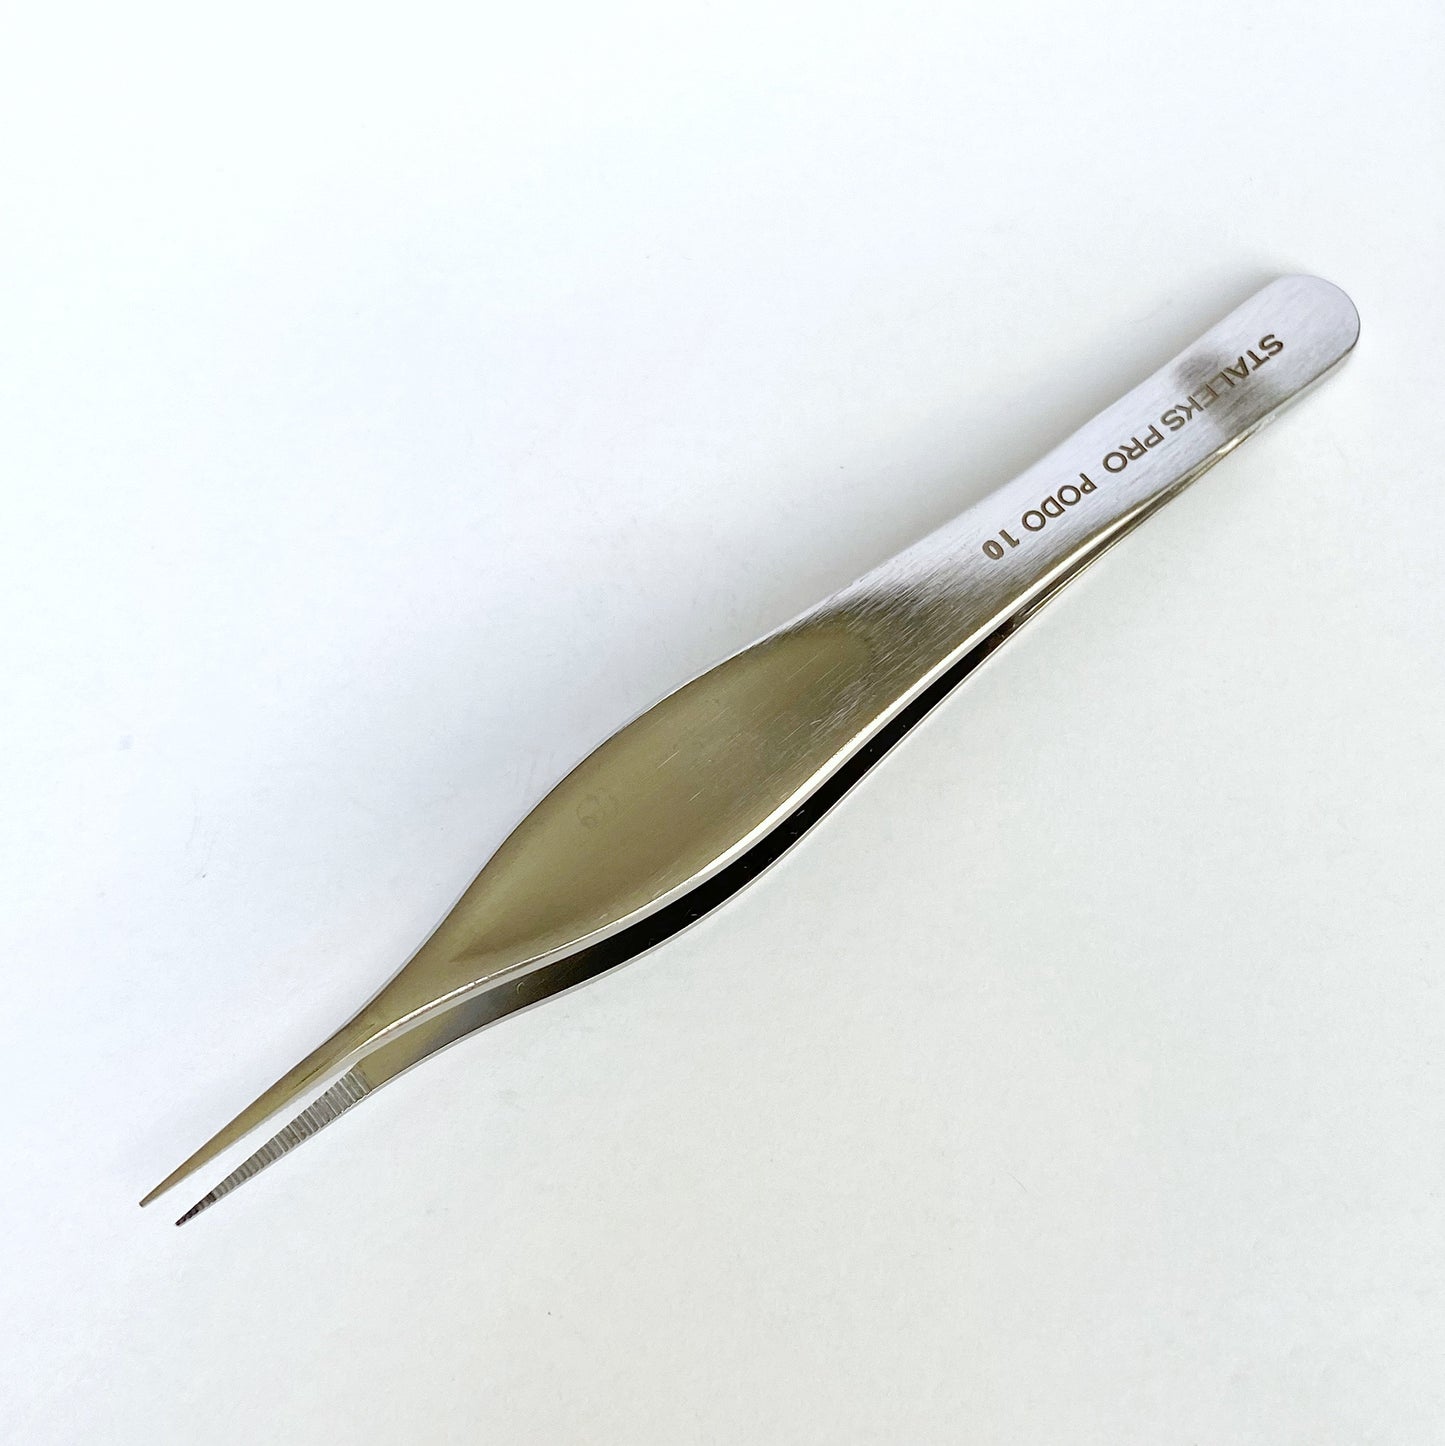 STALEKS PRO Pedicure Tweezers for Splinters, PODO10 (TP-10)